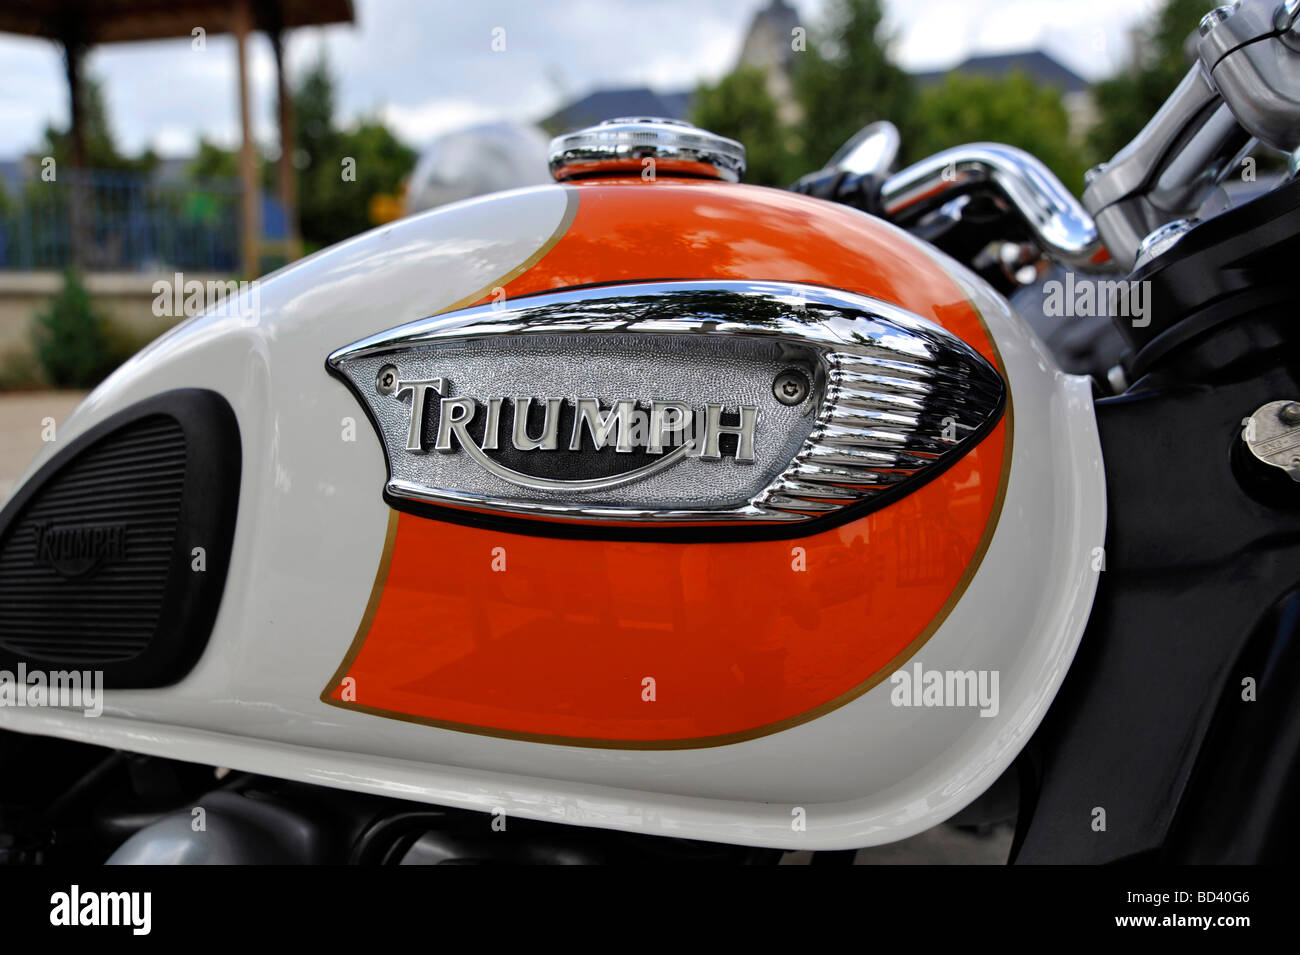 Photo de Gros plan sur un vieux réservoir à essence moto Triumph classique  Photo Stock - Alamy